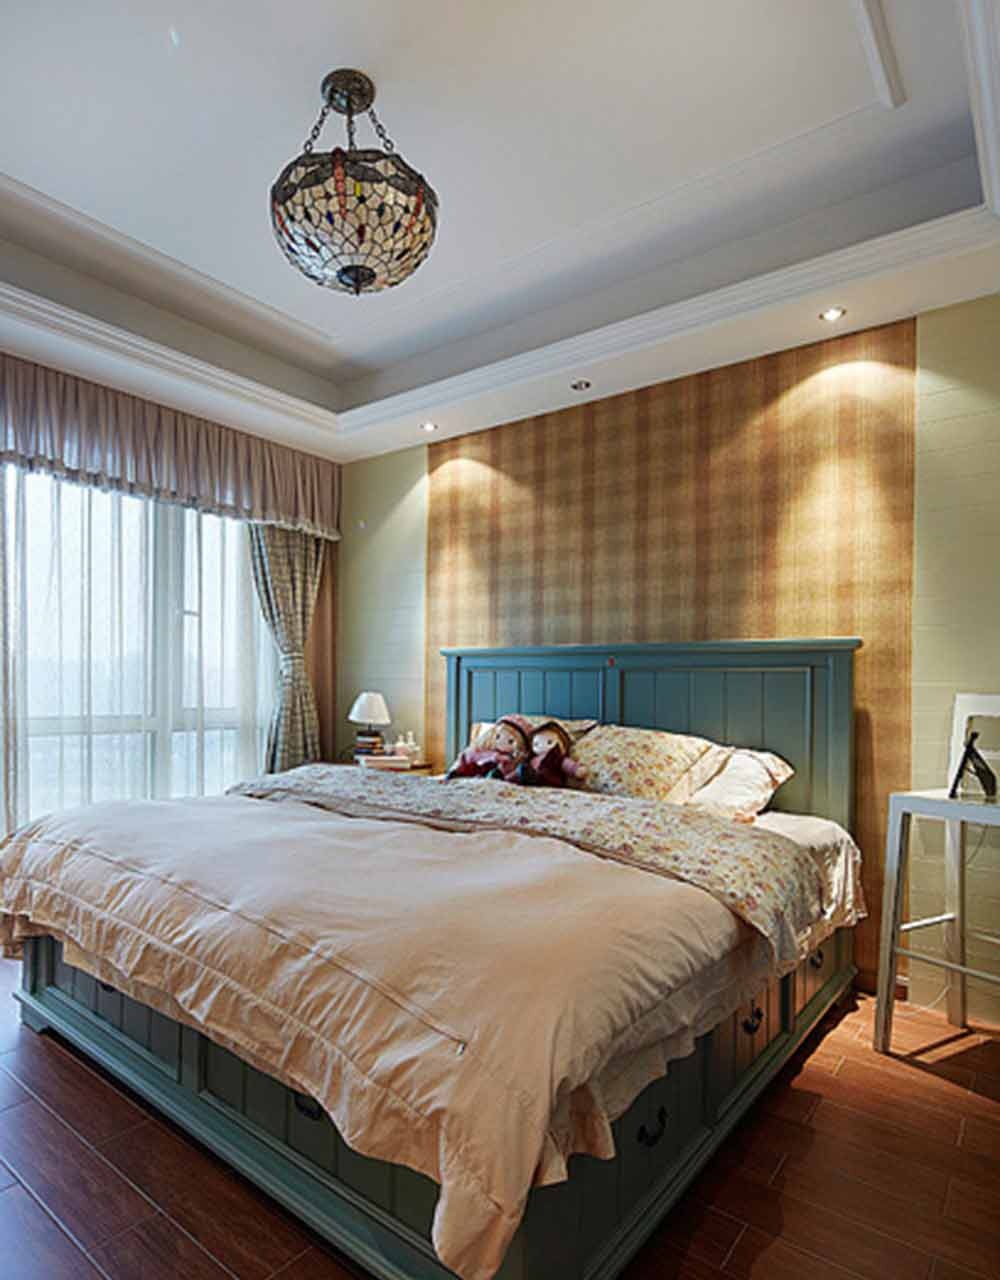 卧室的墙面不使用单一的颜色，而是使用黄色条纹墙纸和浅绿色墙纸的结合，表达设计师大胆创新、清新脱俗的设计理念。